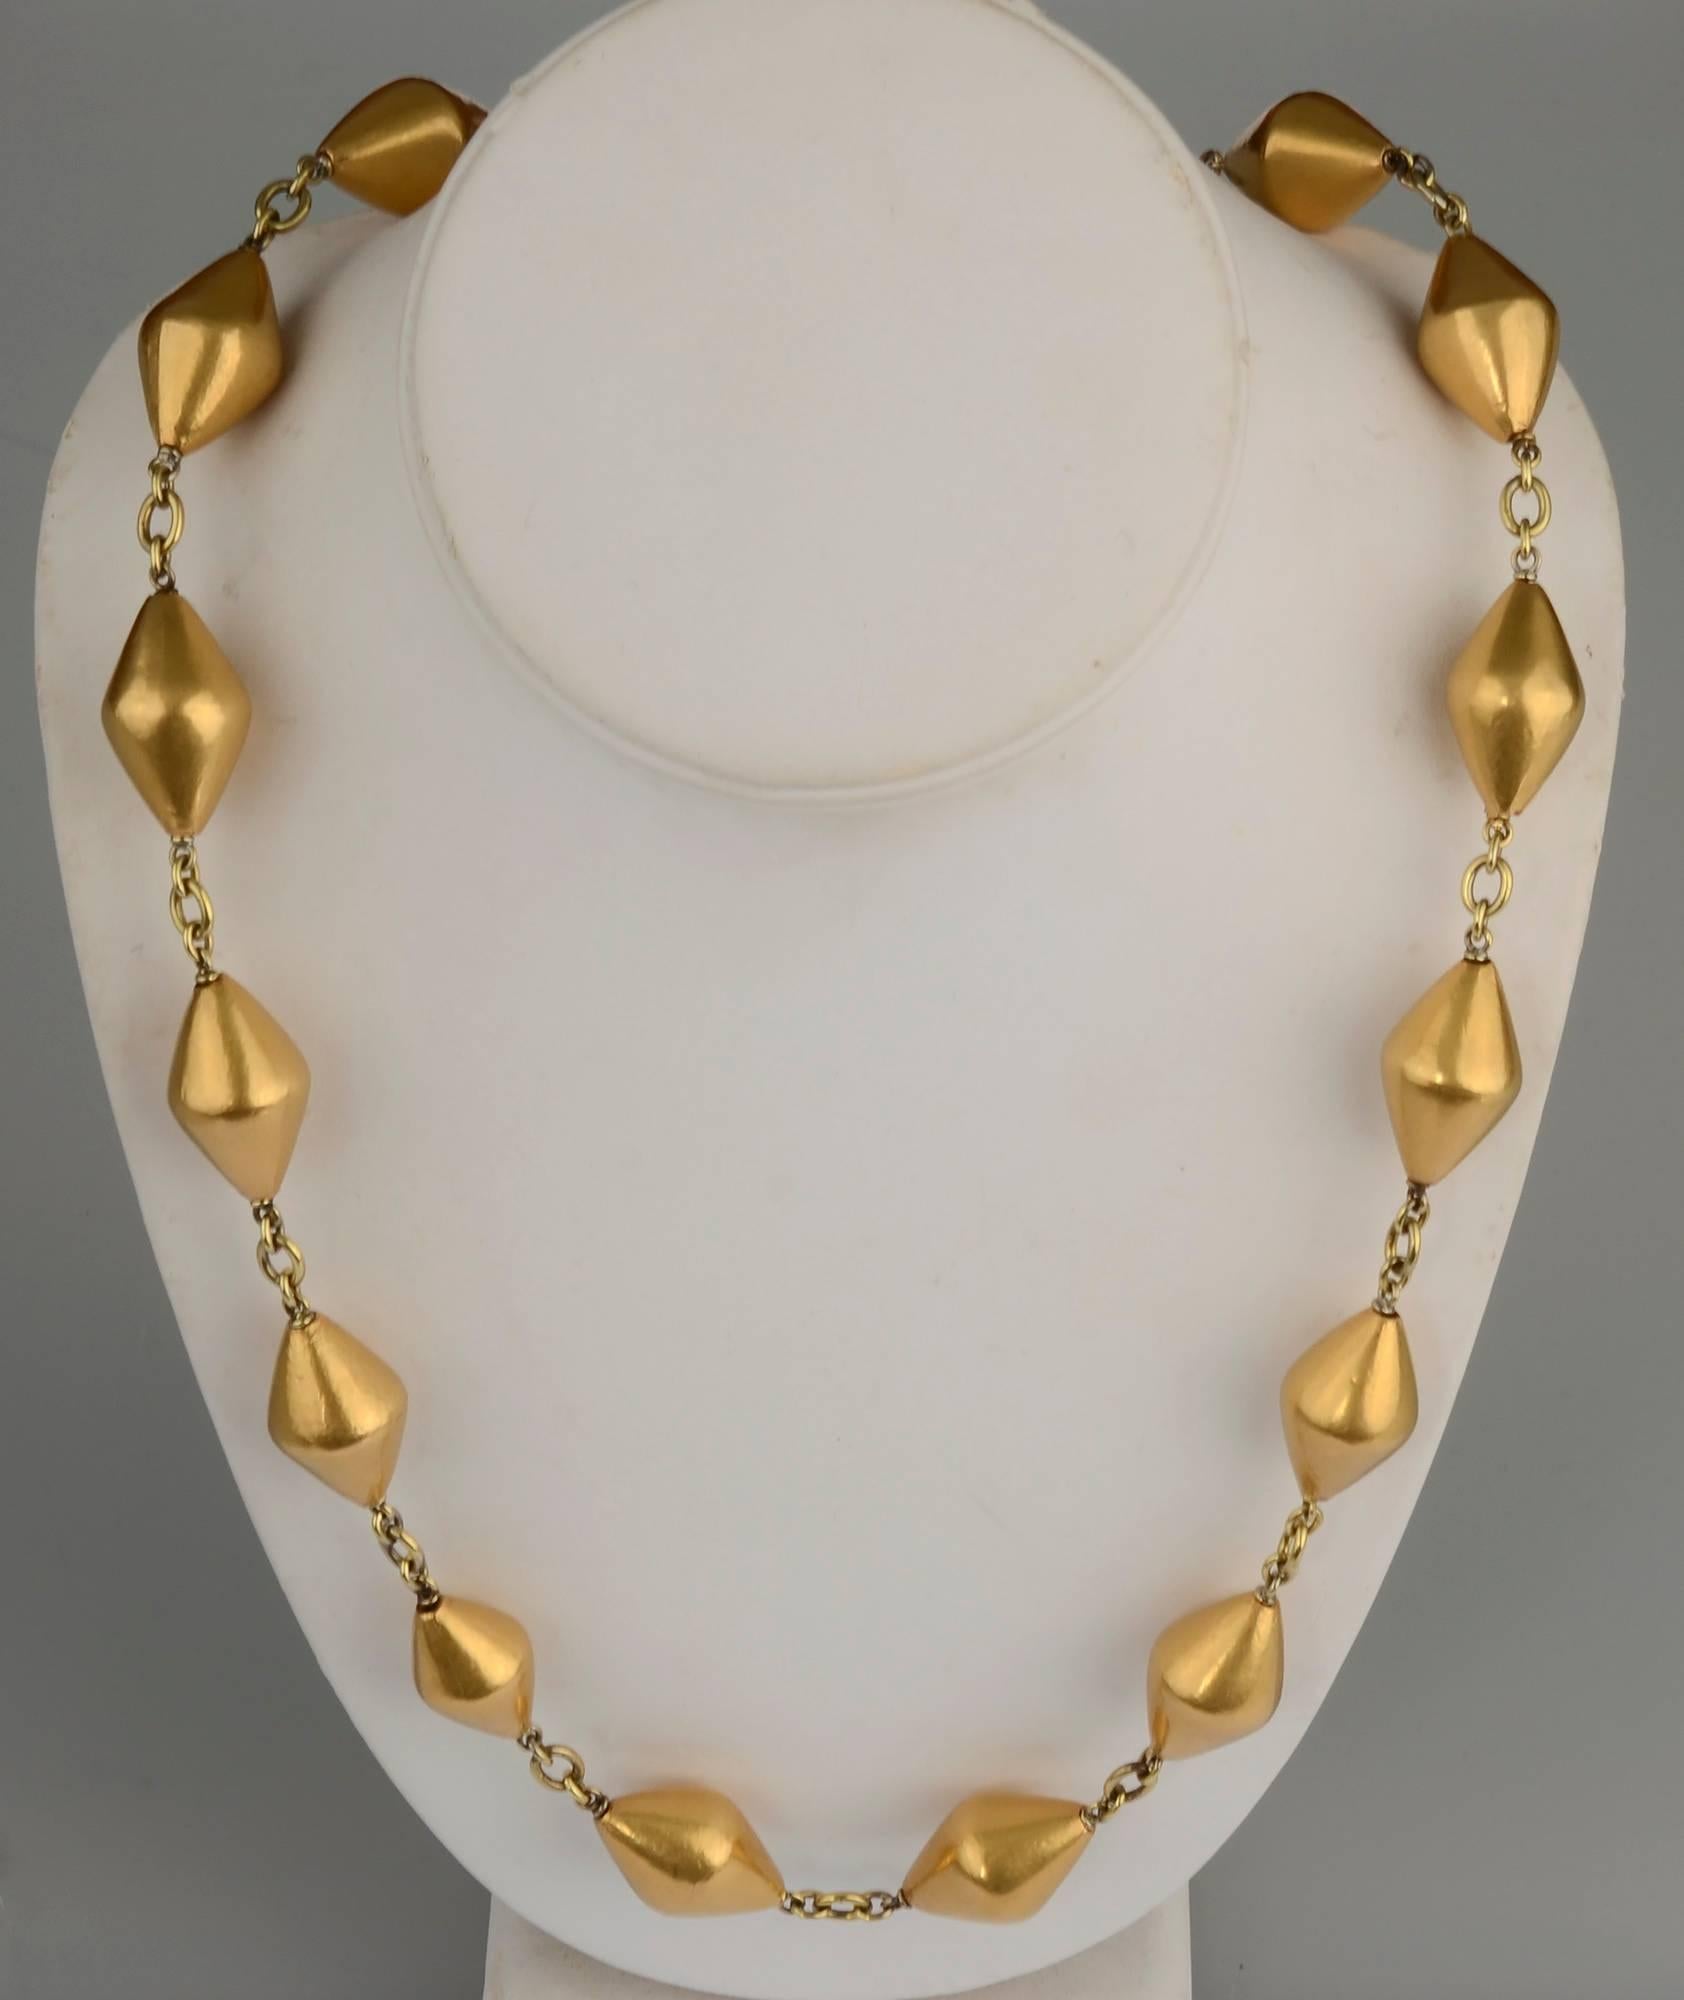 Collier inhabituel à longue chaîne en or 18 carats par Sylva et Cie. Le collier de 32 pouces est composé de 20 perles en forme de losange reliées par des maillons ronds et ovales. Il est doté d'un magnifique fermoir détaillé avec des motifs floraux. 